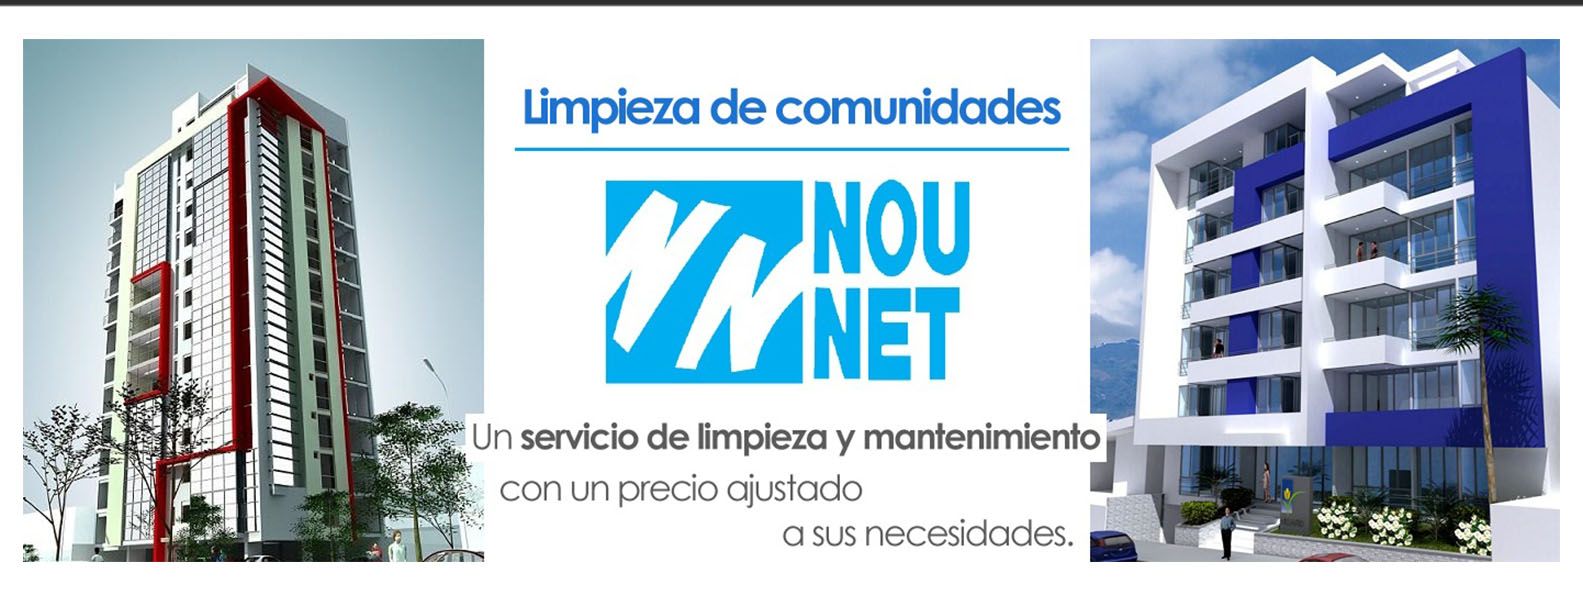 Limpiezas Nou Net banner 2